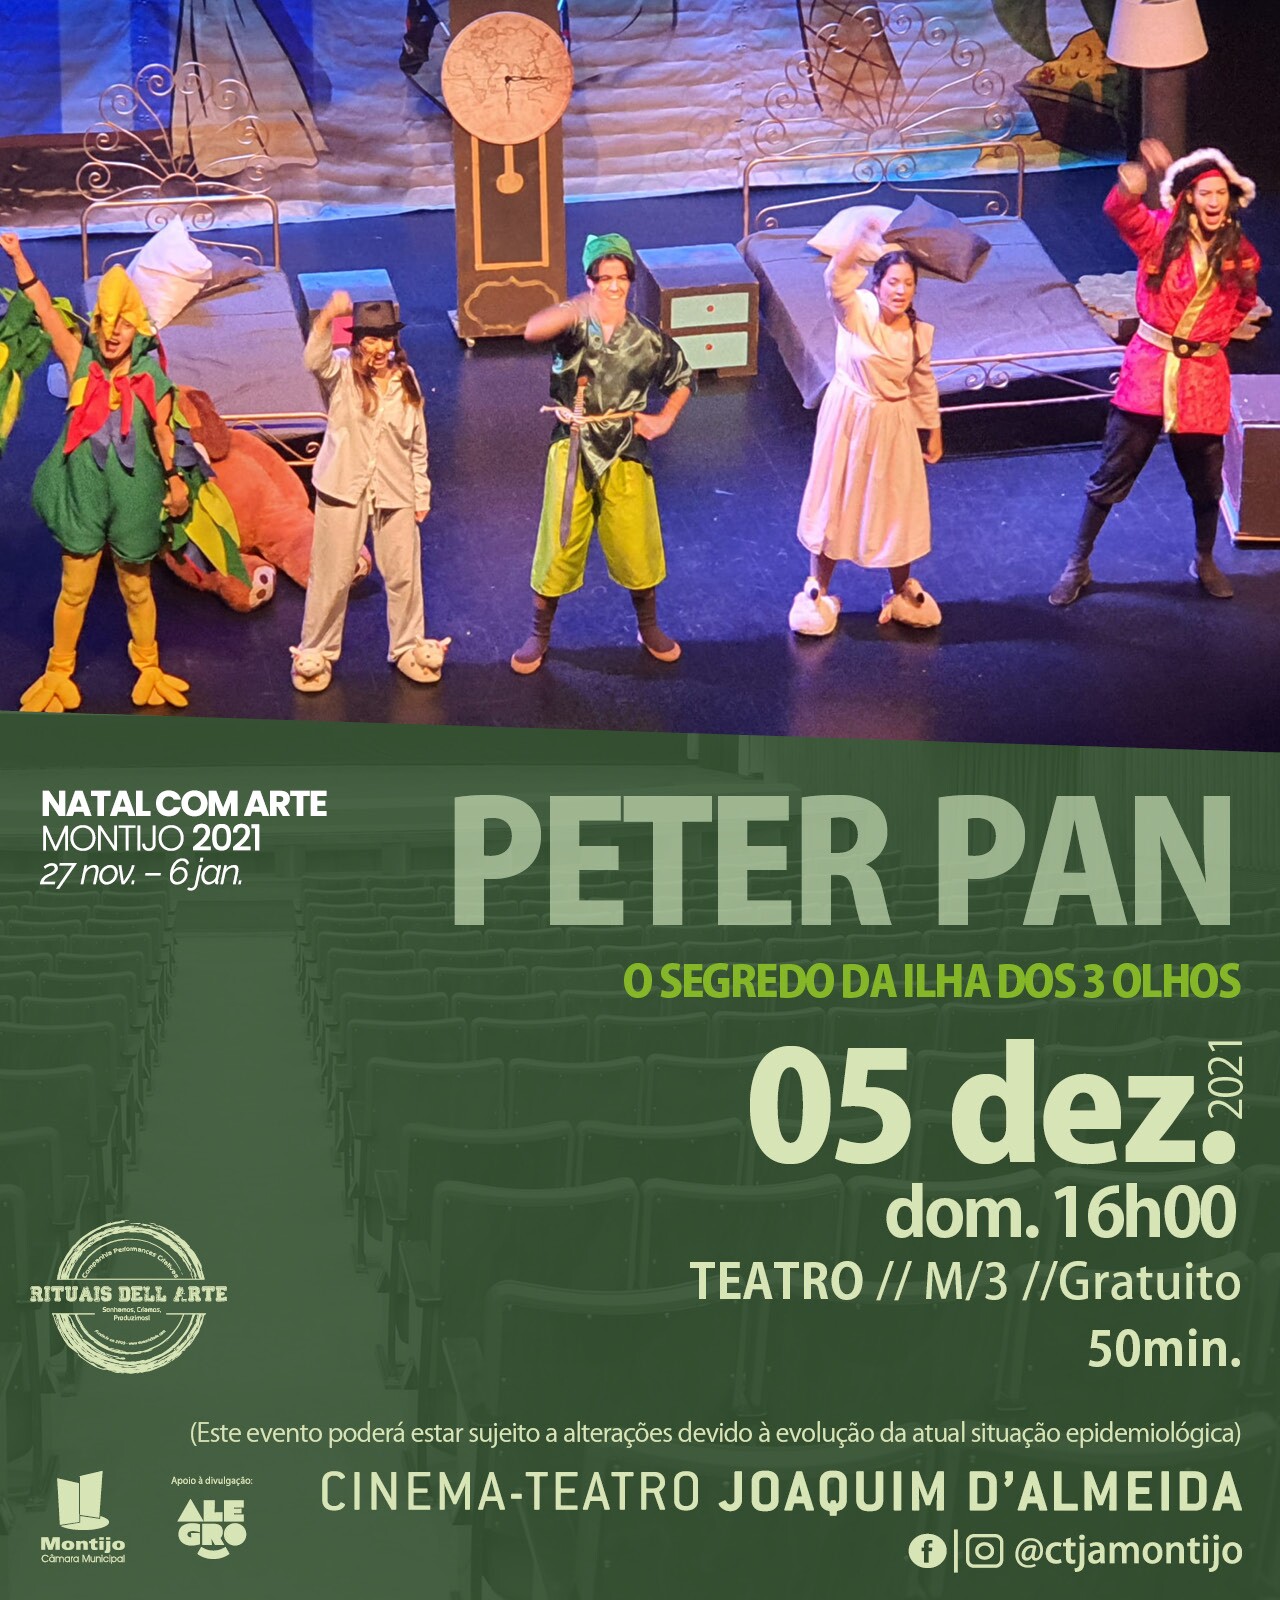 img 960x1200px PETER PAN_DEZ 2021